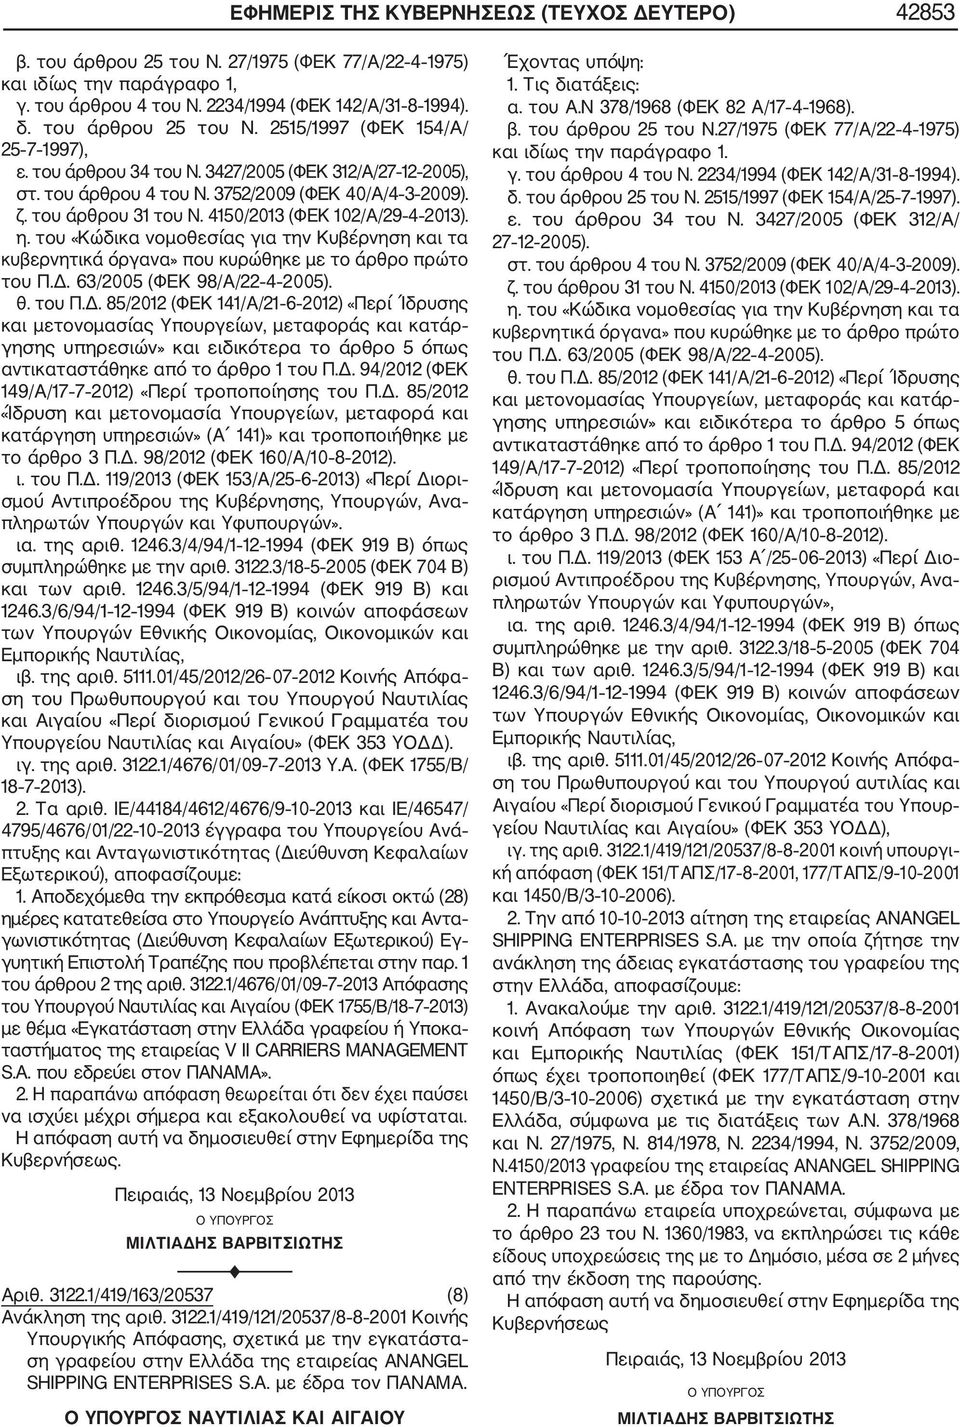 4150/2013 (ΦΕΚ 102/Α/29 4 2013). η. του «Κώδικα νομοθεσίας για την Κυβέρνηση και τα κυβερνητικά όργανα» που κυρώθηκε με το άρθρο πρώτο του Π.Δ.